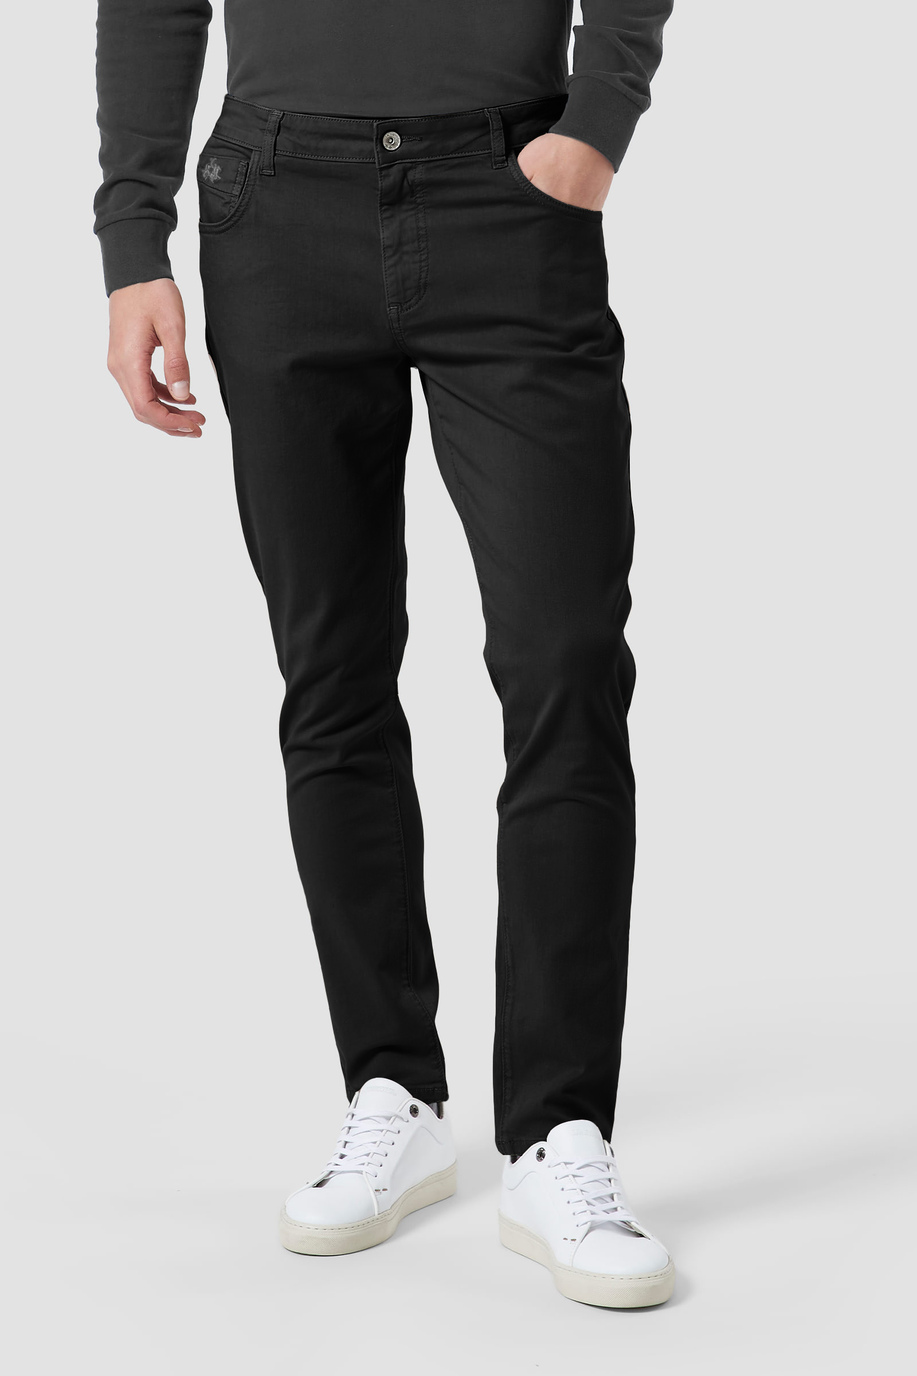 5-pocket stretch cotton trousers | La Martina - Official Online Shop